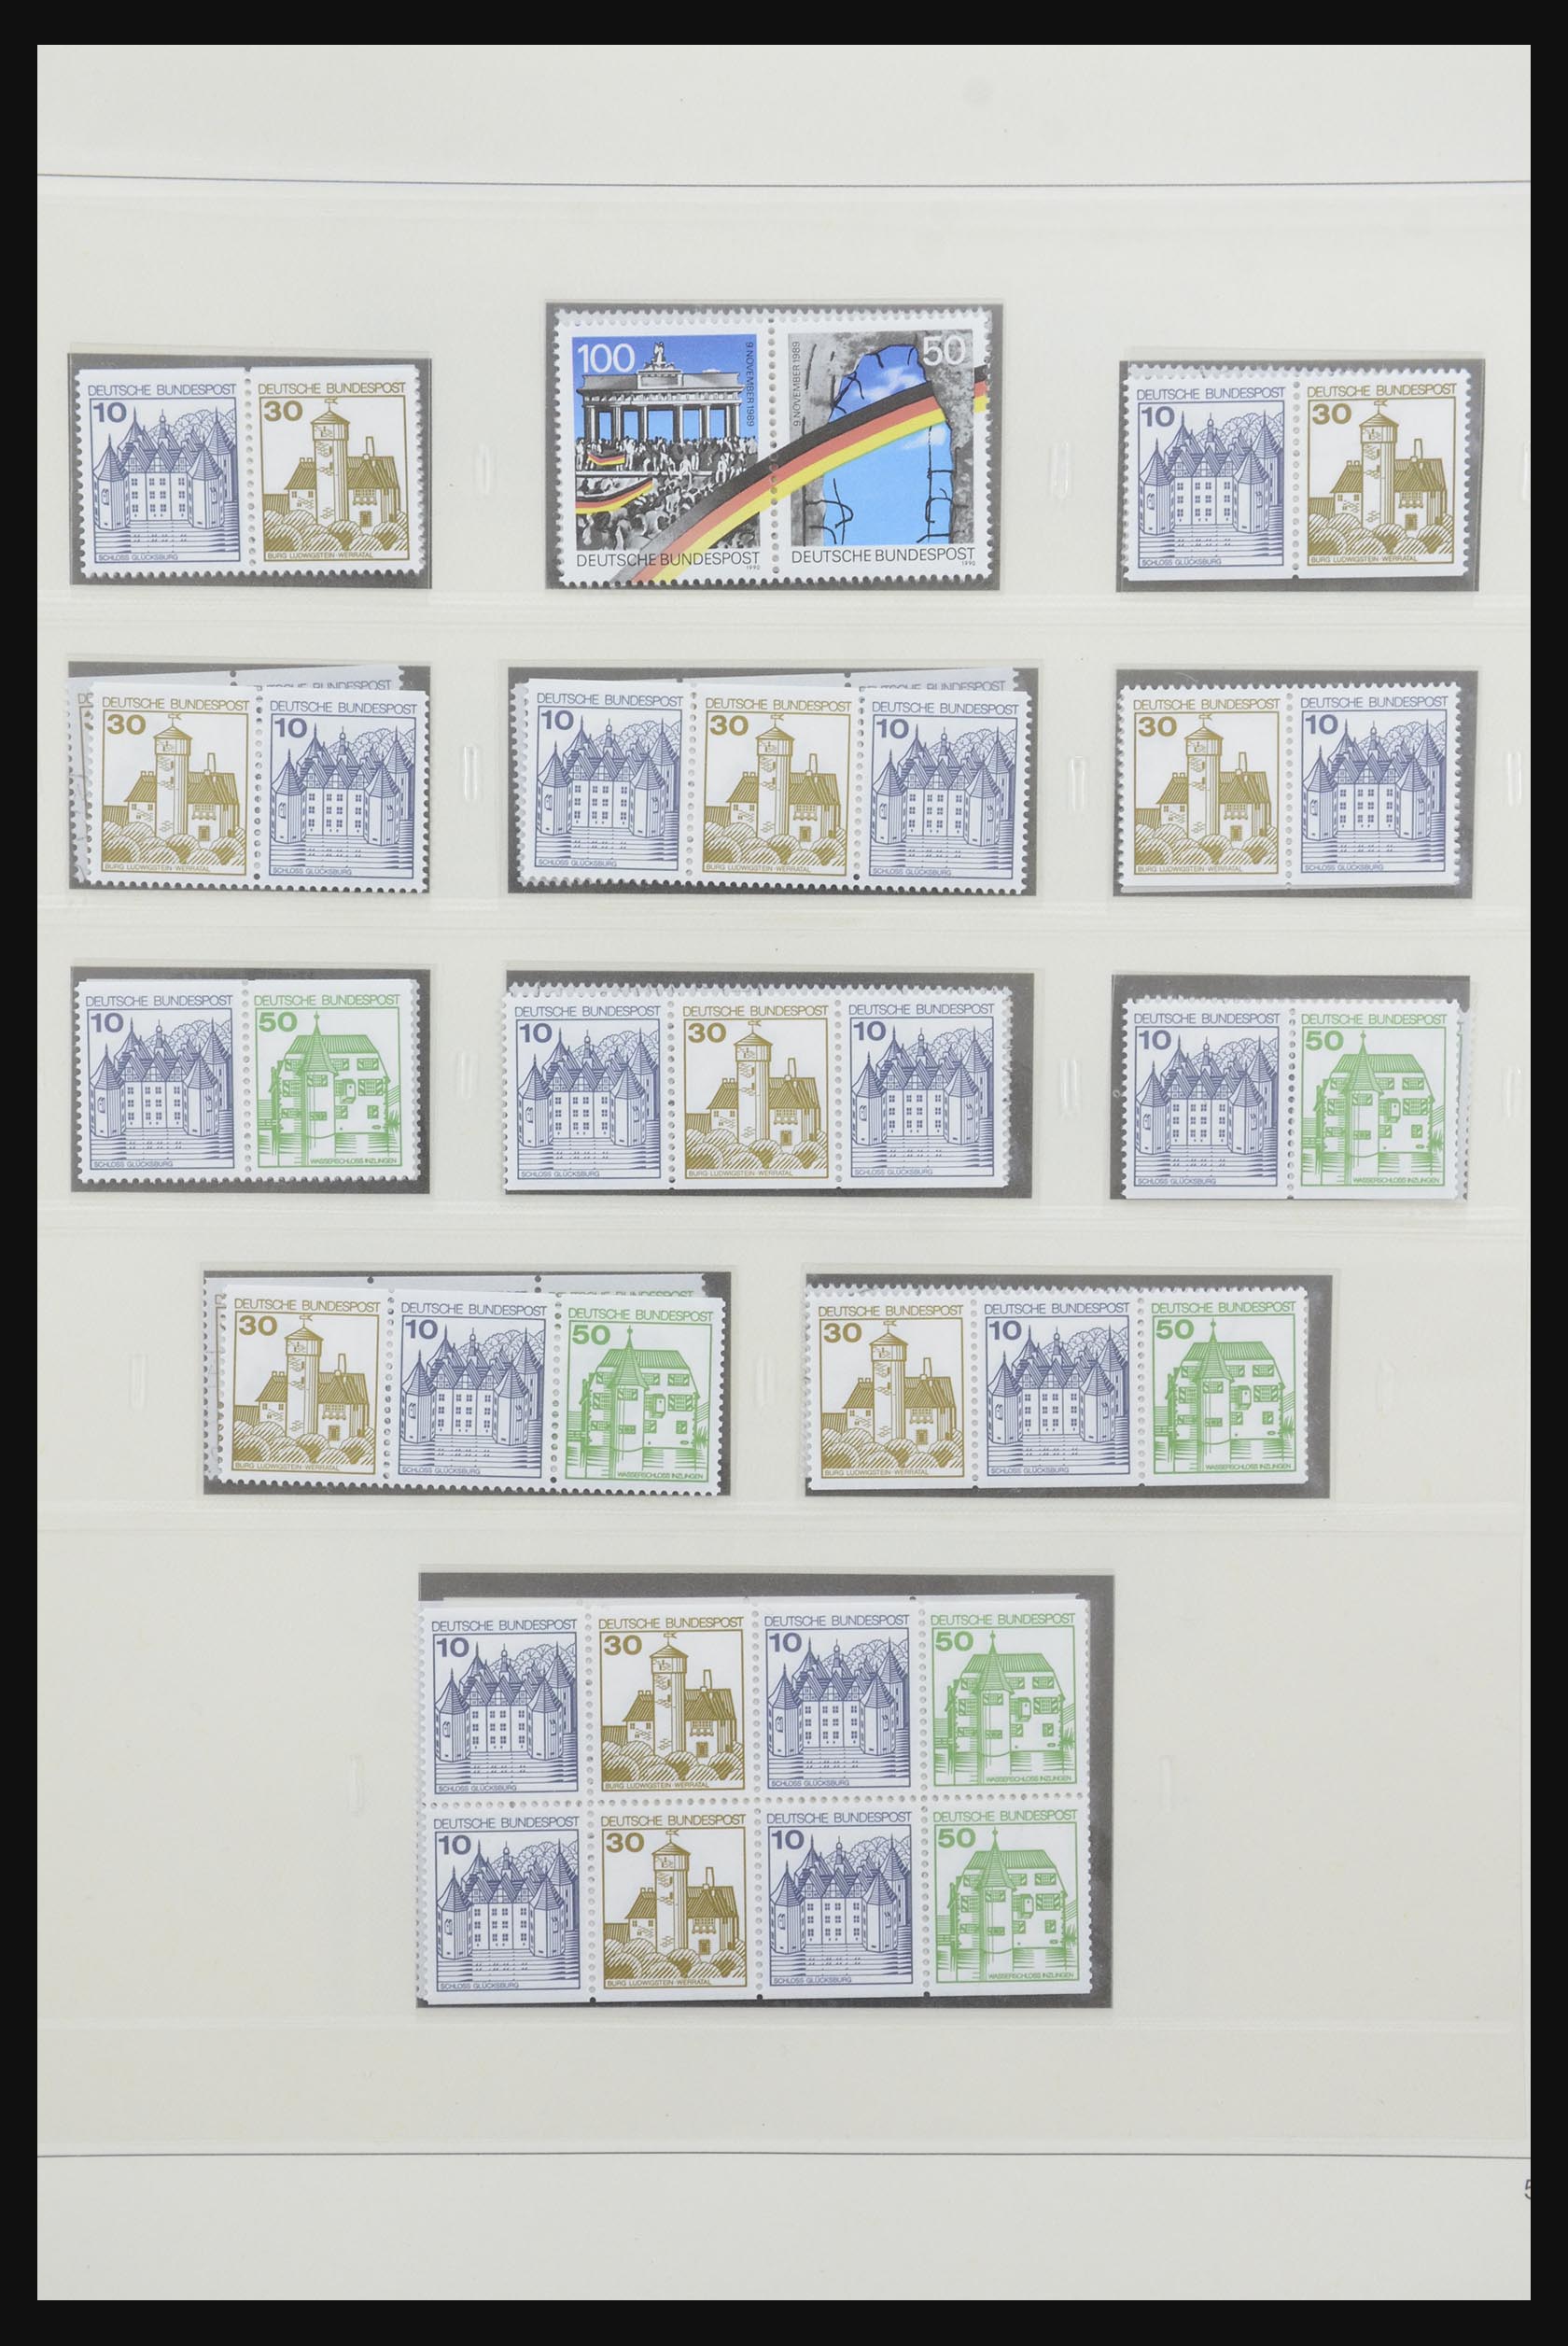 31842 072 - 31842 Bundespost combinaties 1951-2003.